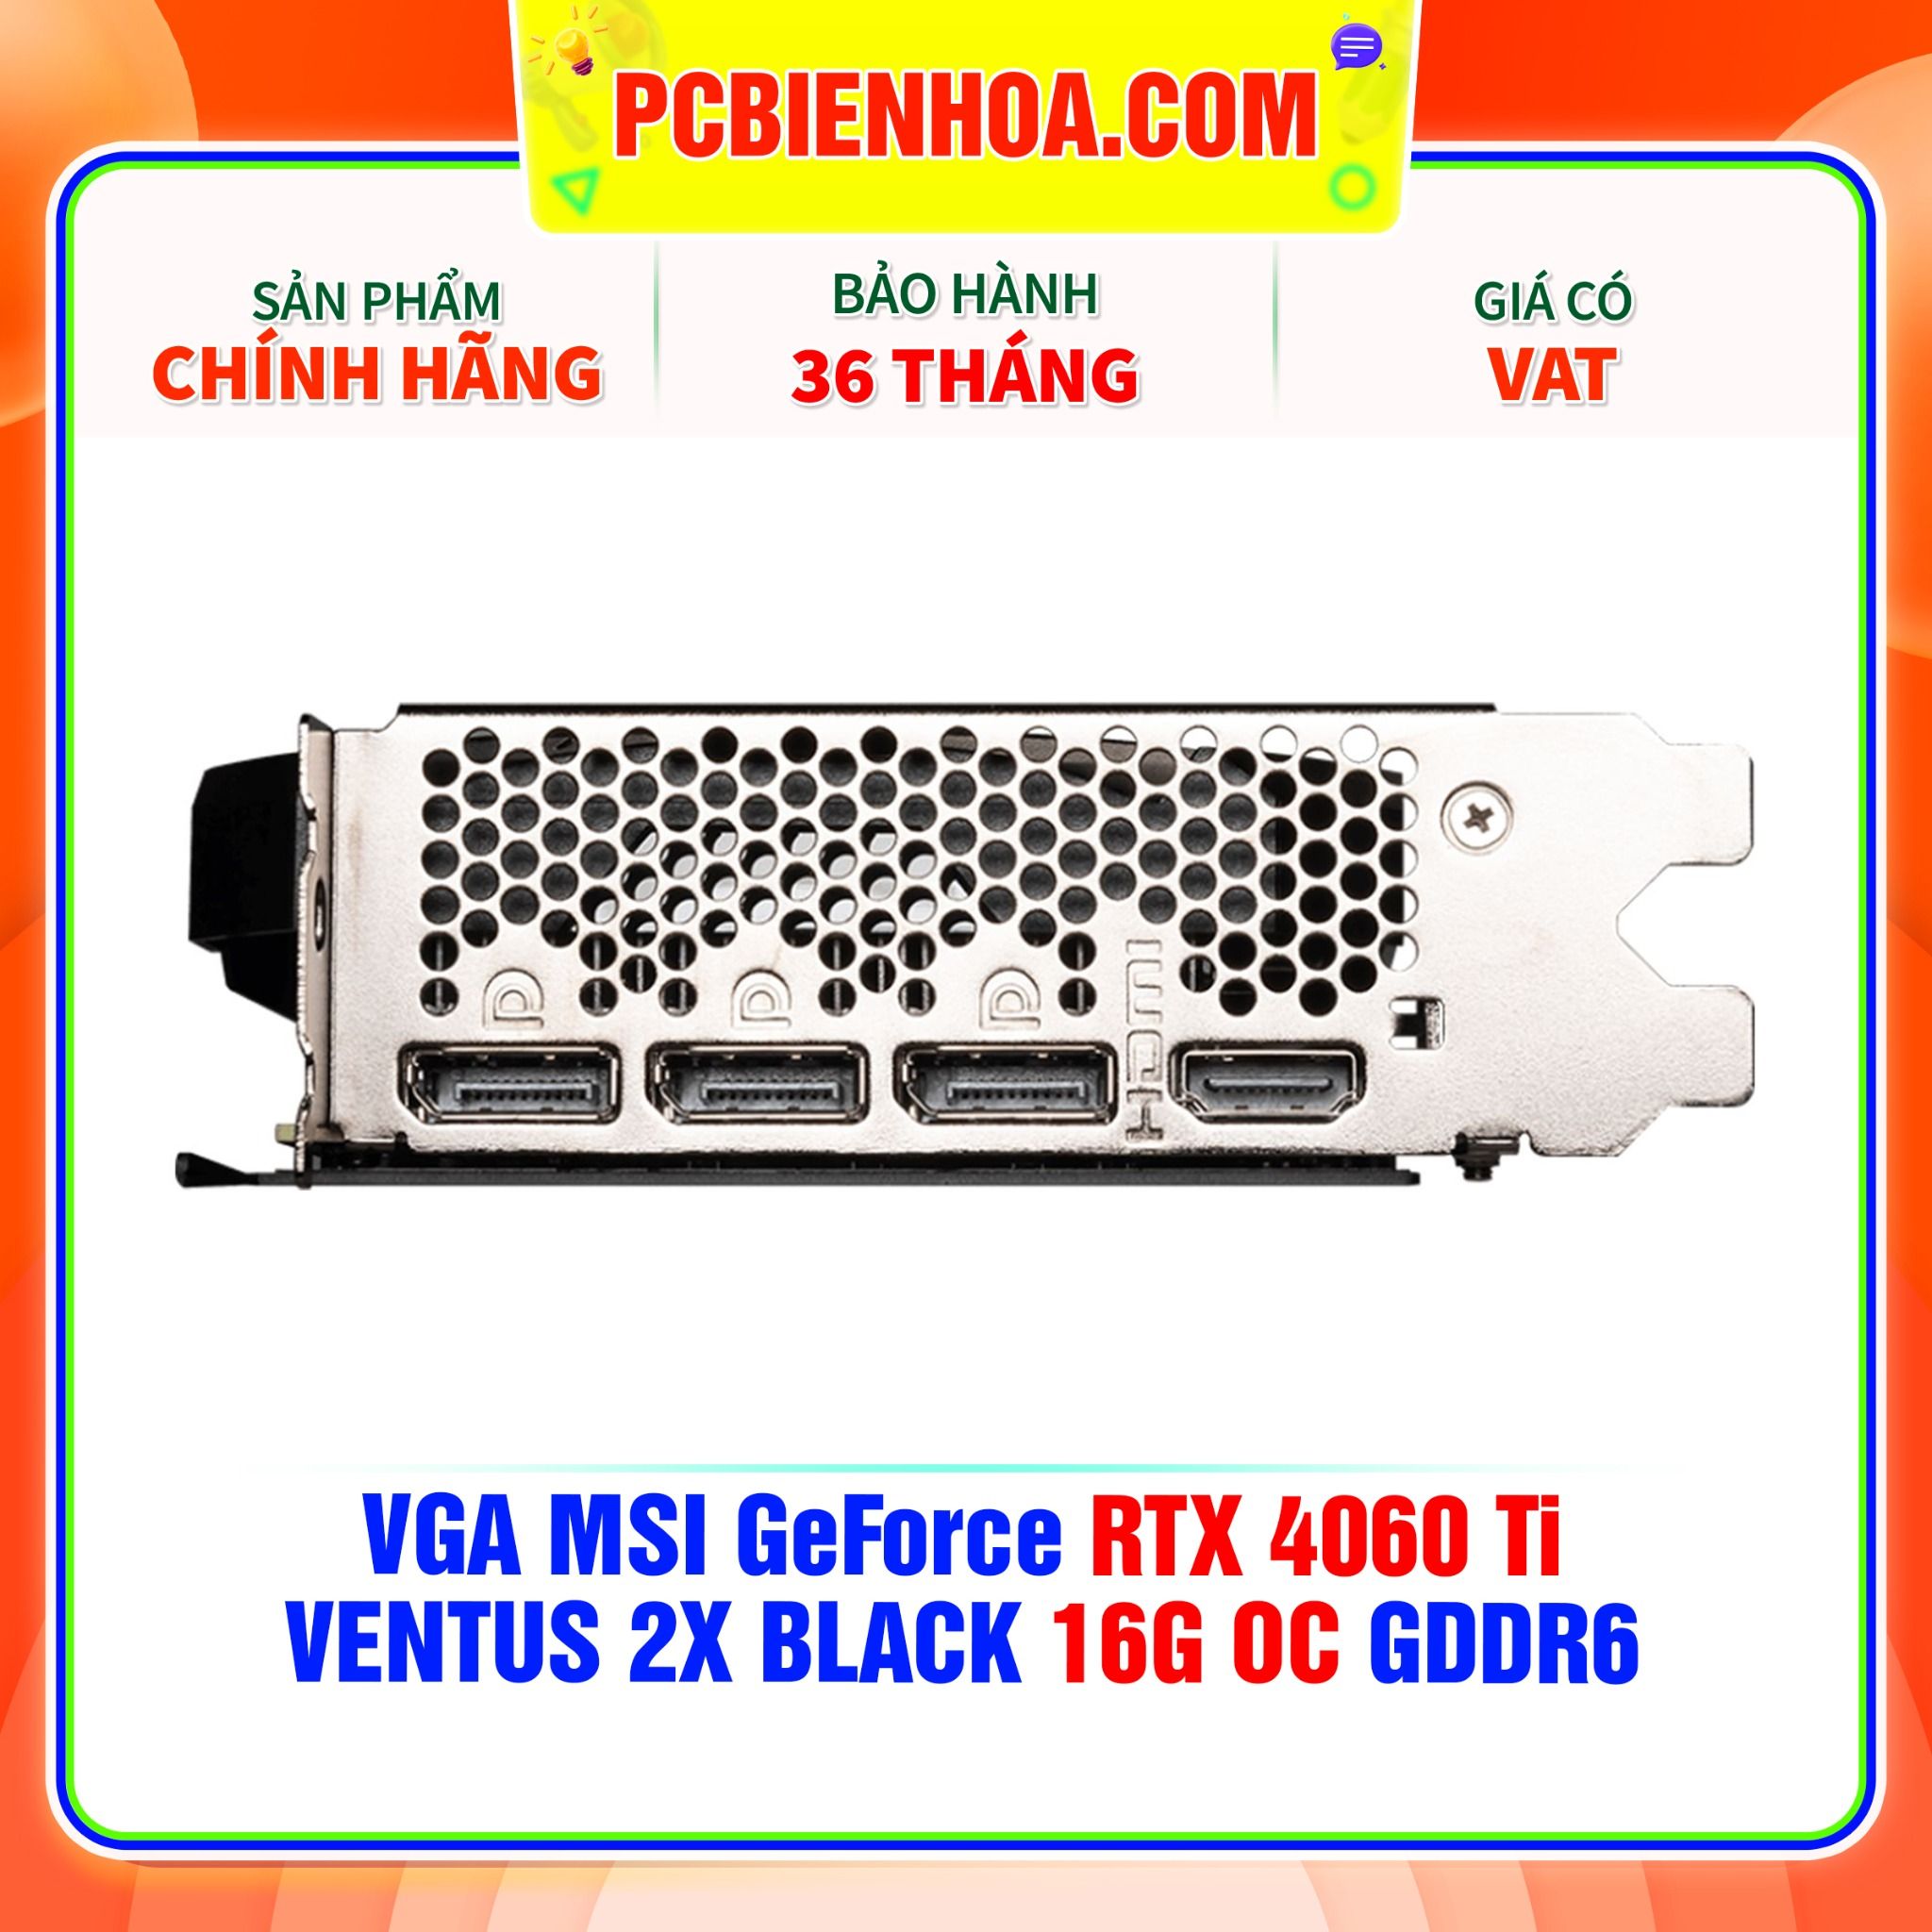  VGA MSI GeForce RTX 4060 Ti VENTUS 2X BLACK 16G OC GDDR6 